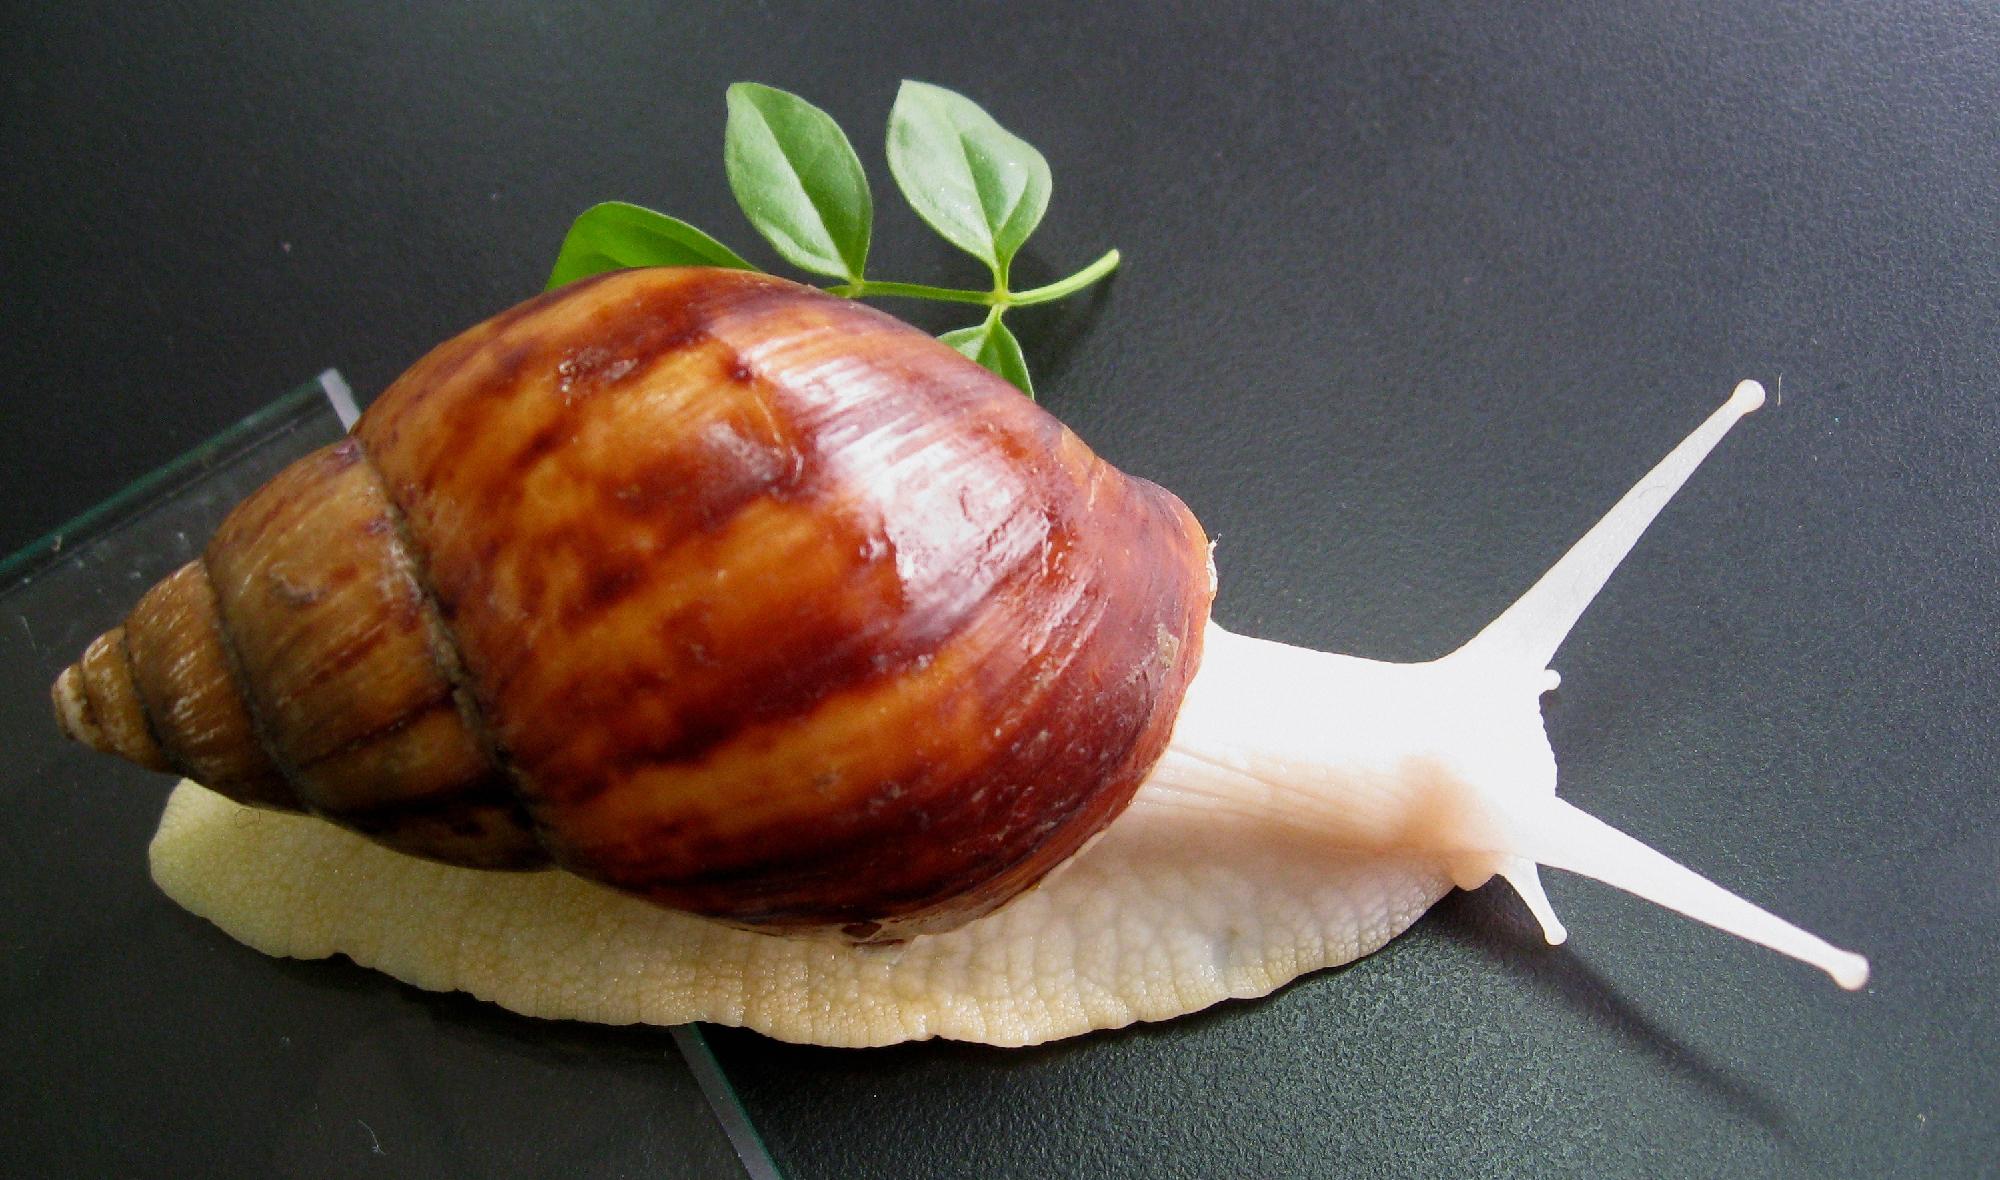 蜗牛 虫 自然 - Pixabay上的免费照片 - Pixabay